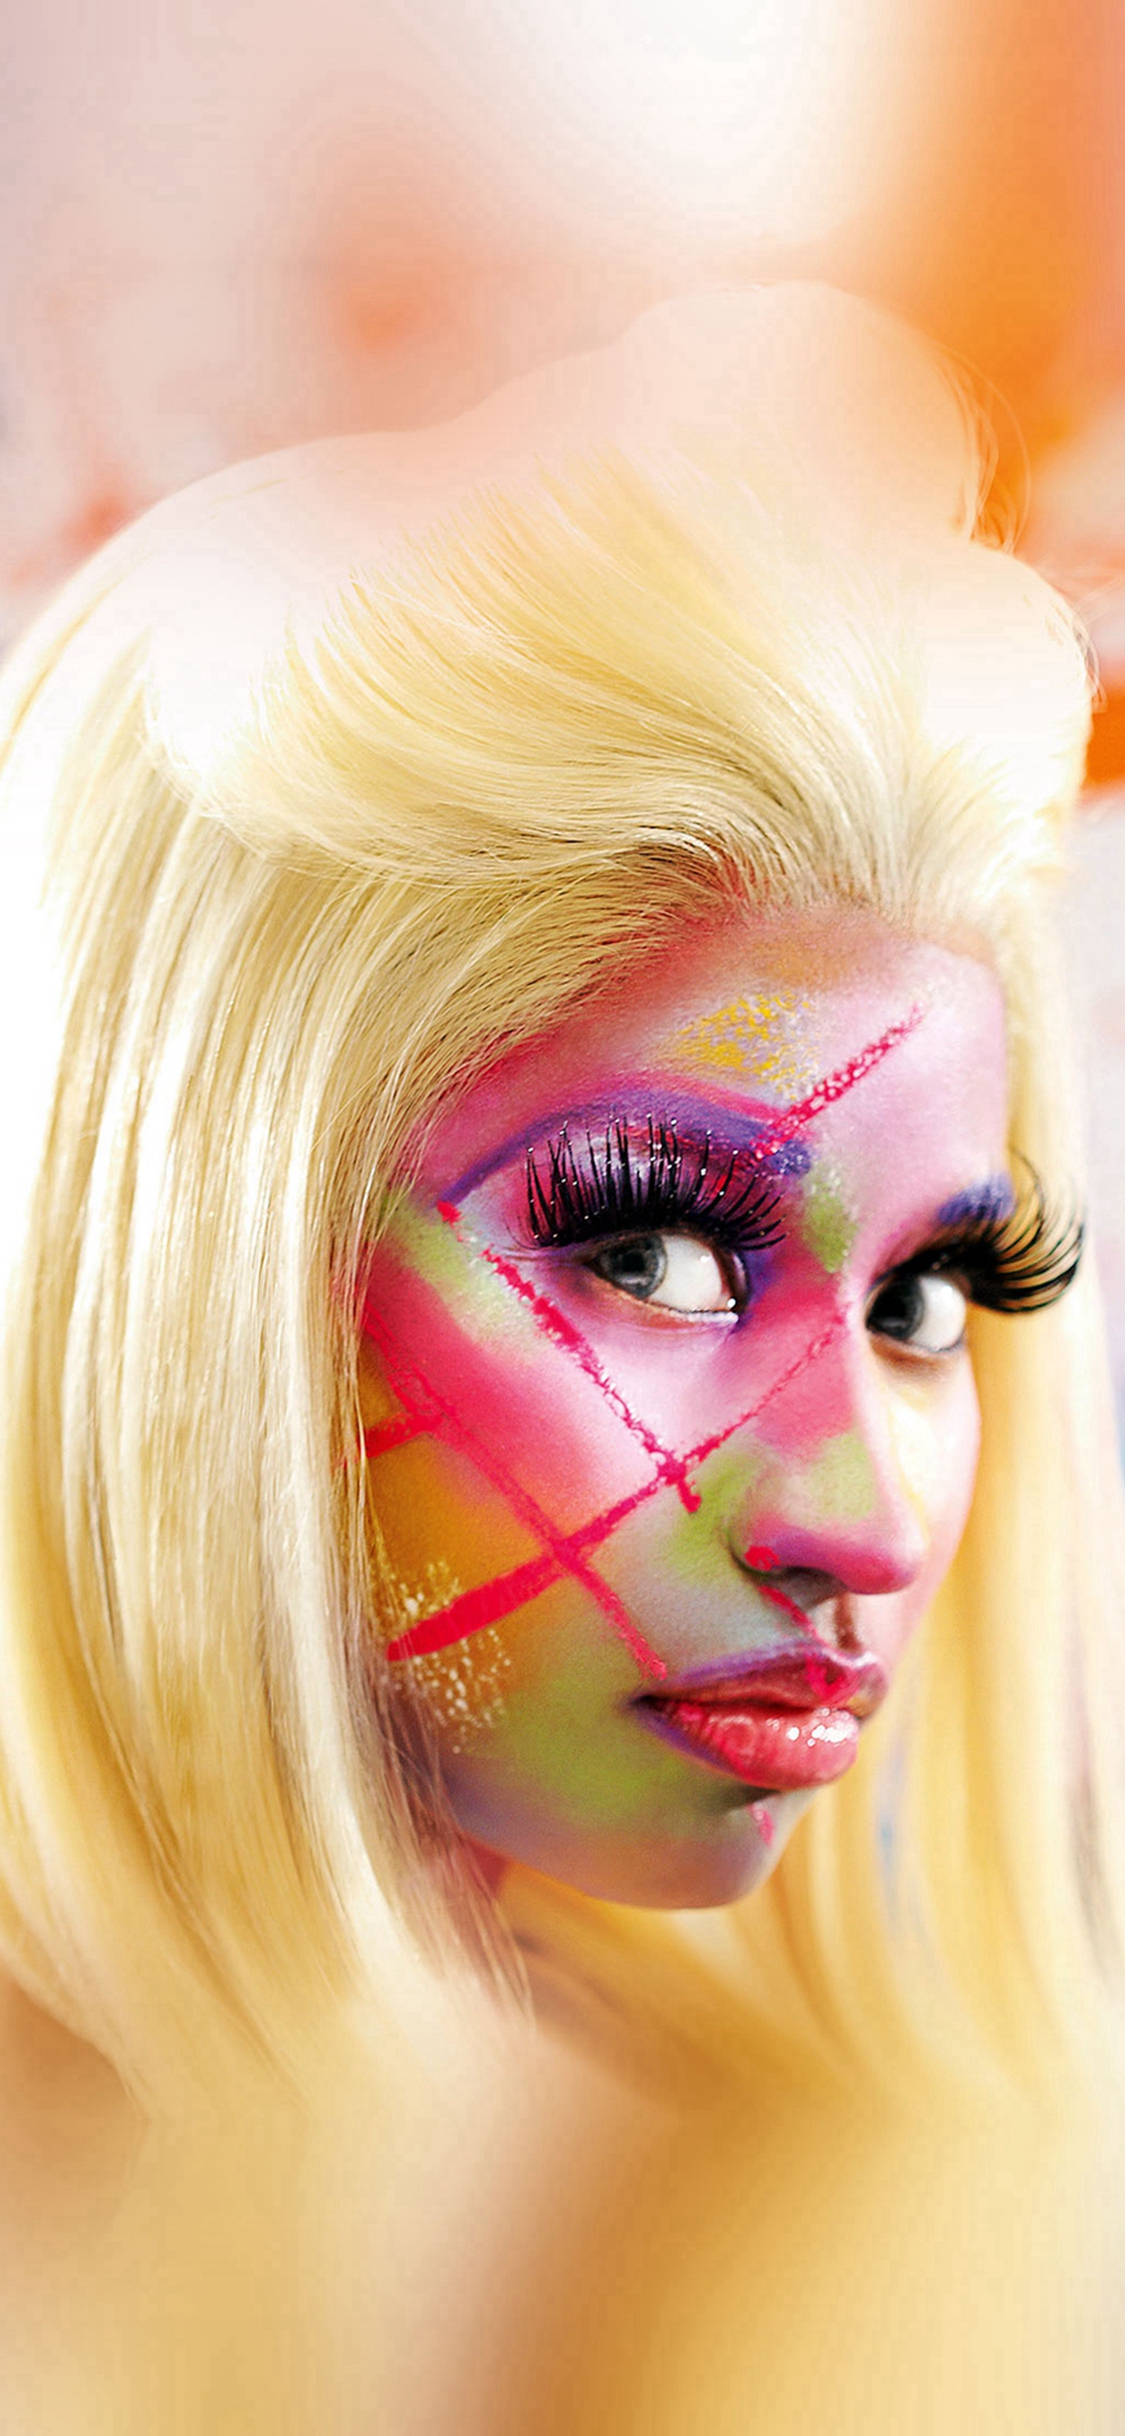 Nicki Minaj Face Girl Music iPhone X Wallpaper Free Download